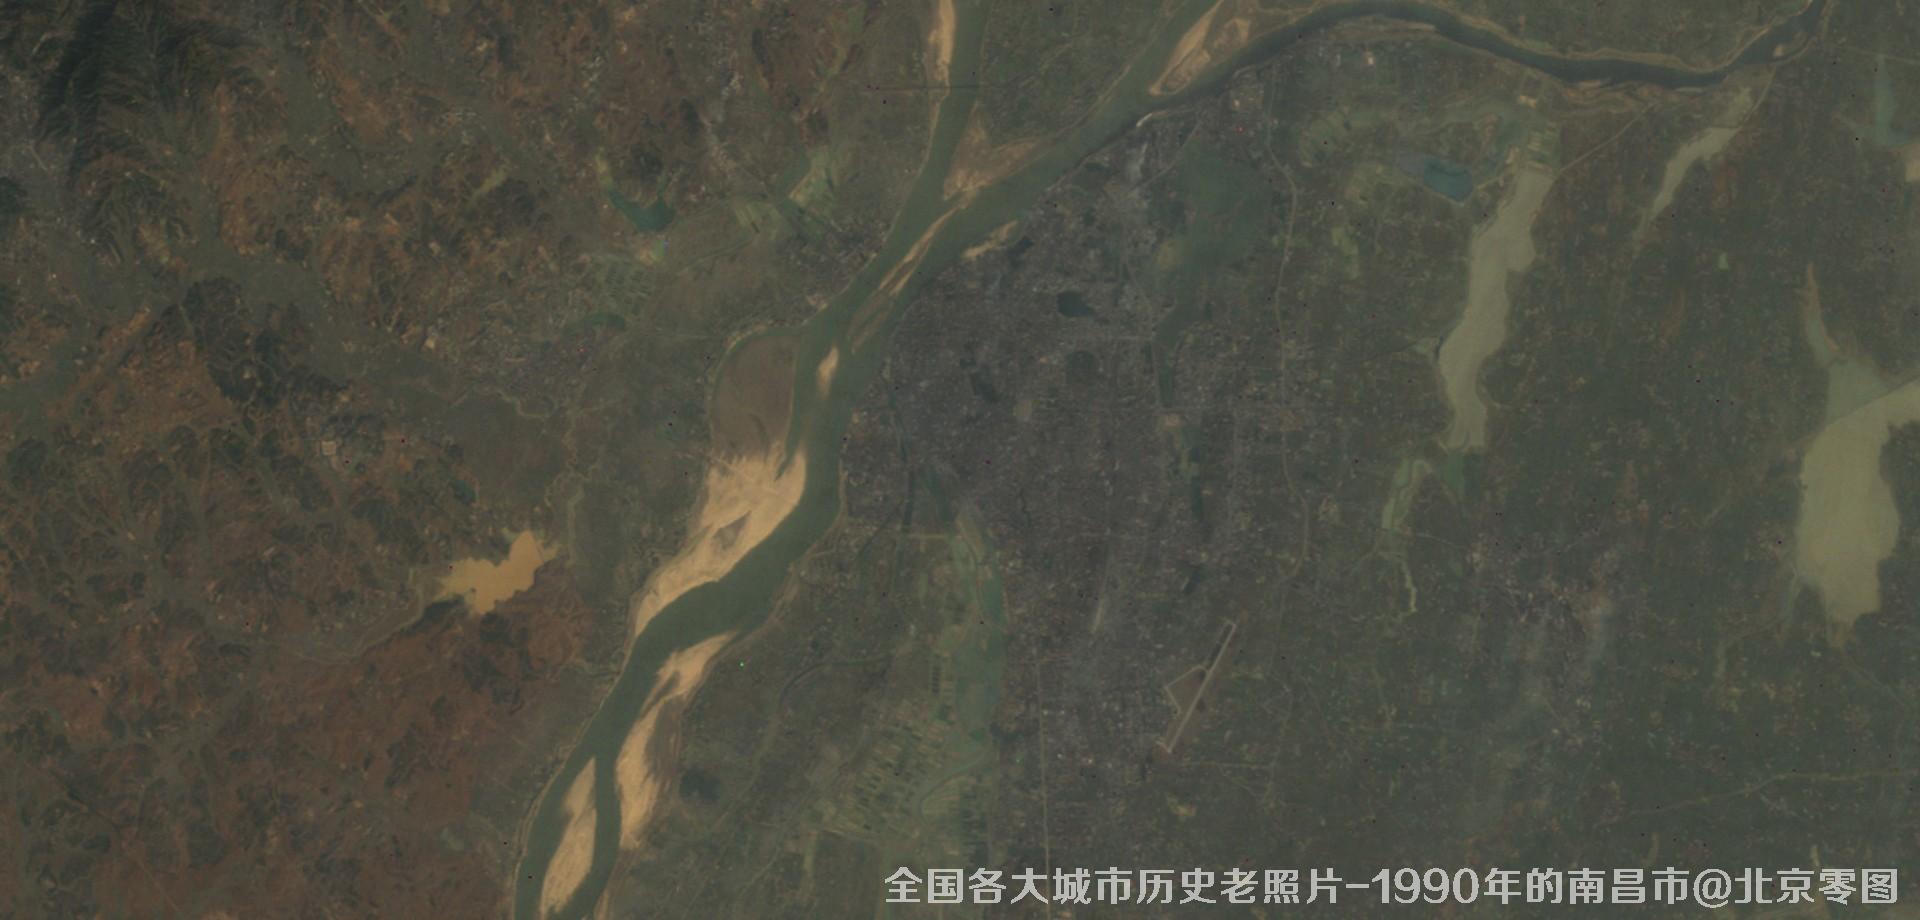 美国Landsat卫星拍摄的1990年的江西省南昌市历史卫星影像图